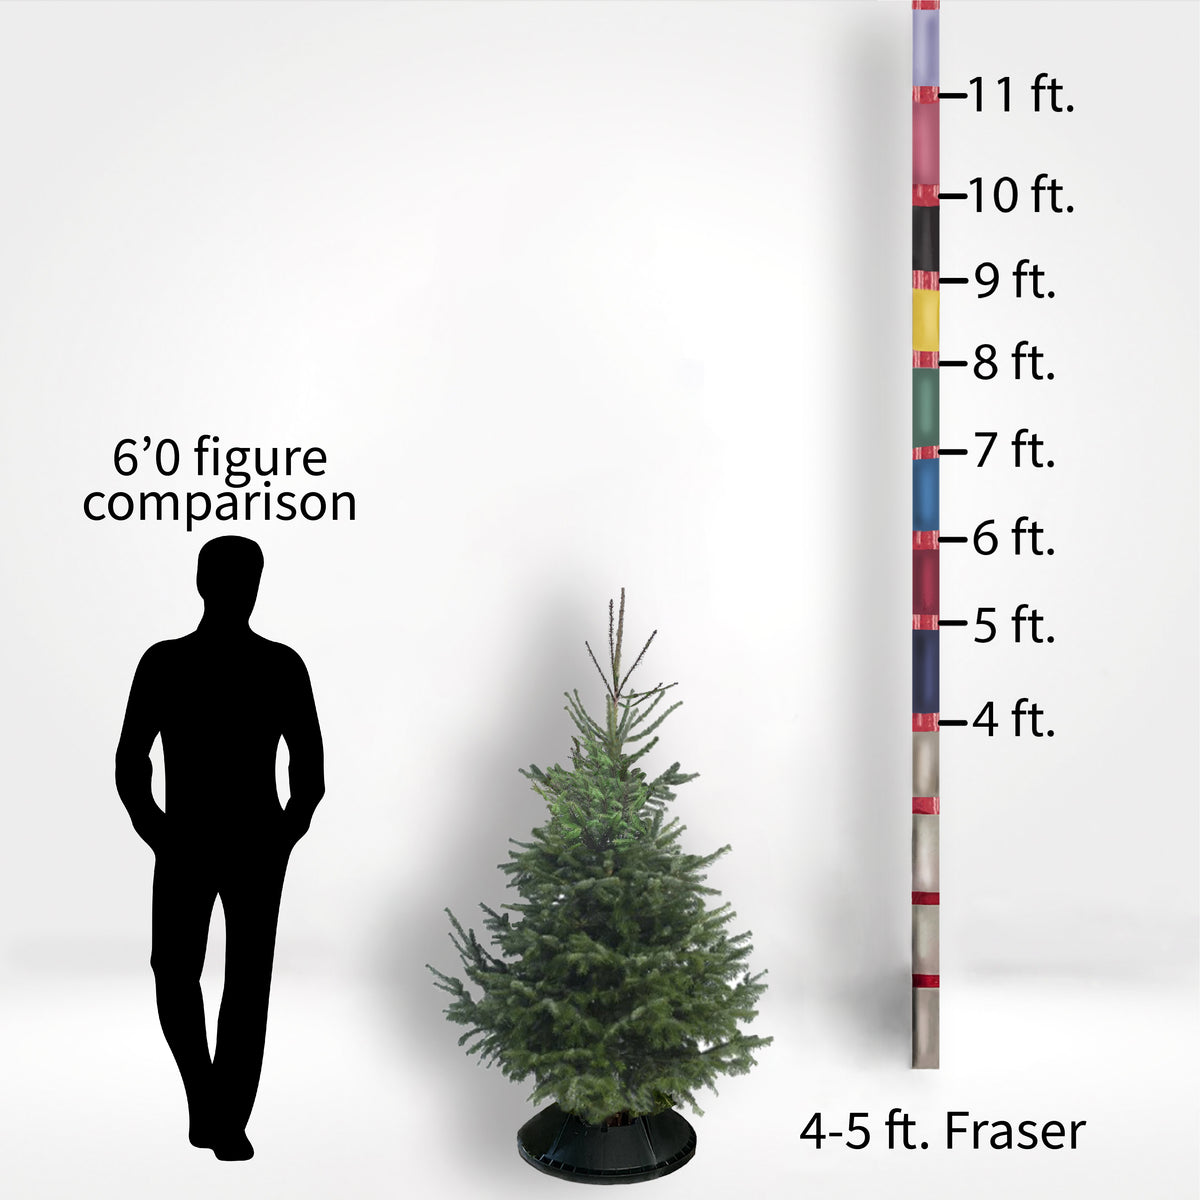 Fir Trees (4-10ft)